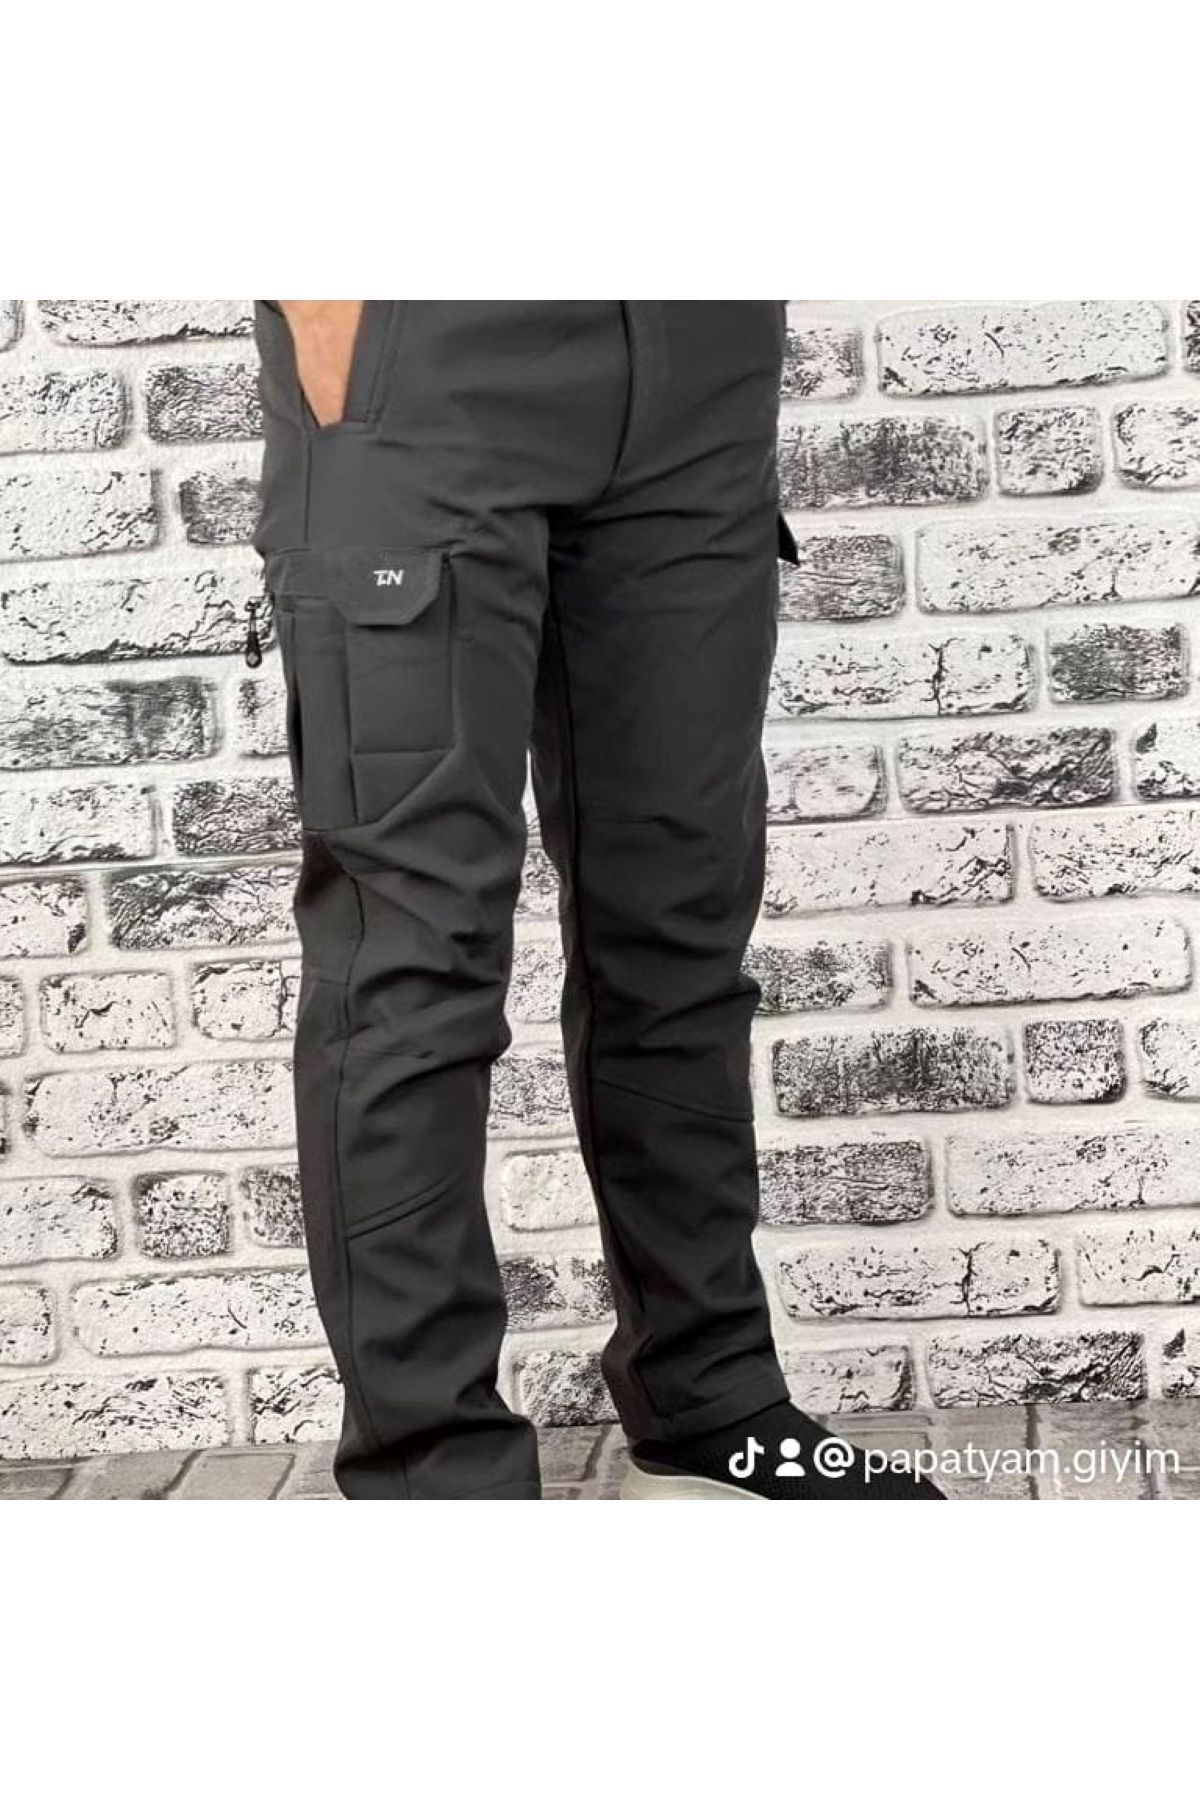 Mikro Taktical kargocep cargocep içi polarlı kışlık softjel sıvı itici 5 cepli outdoor pantolon